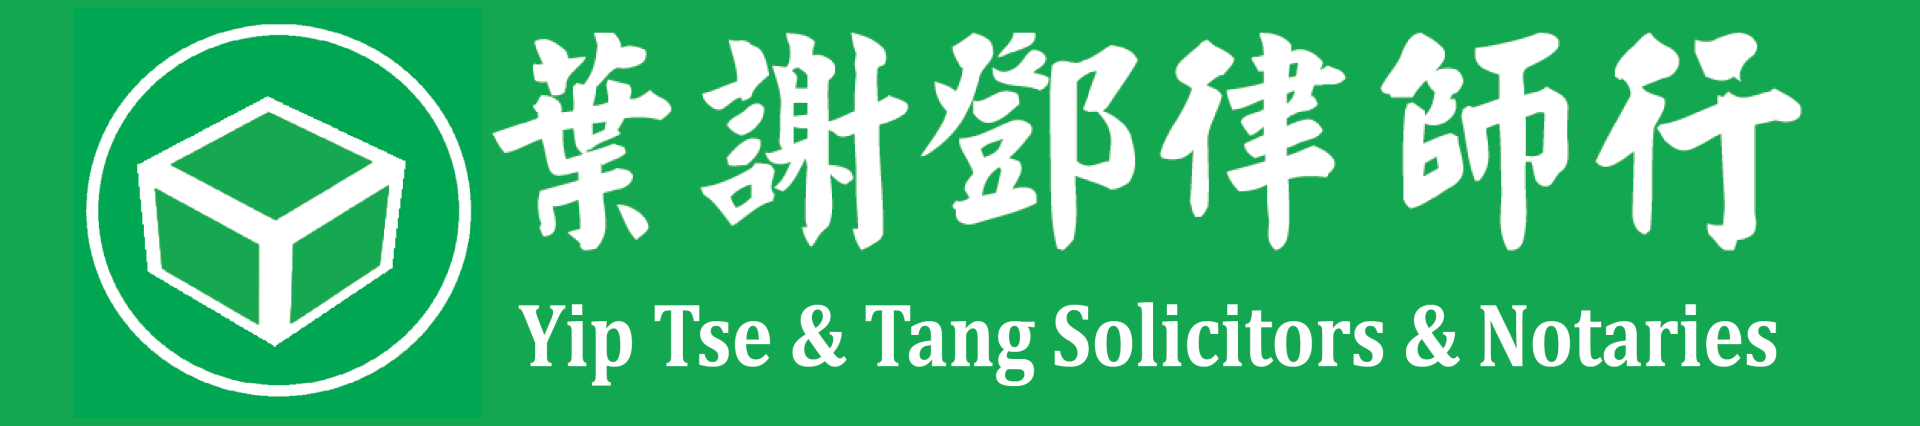 Yip Tse & Tang, Solicitors & Notaries